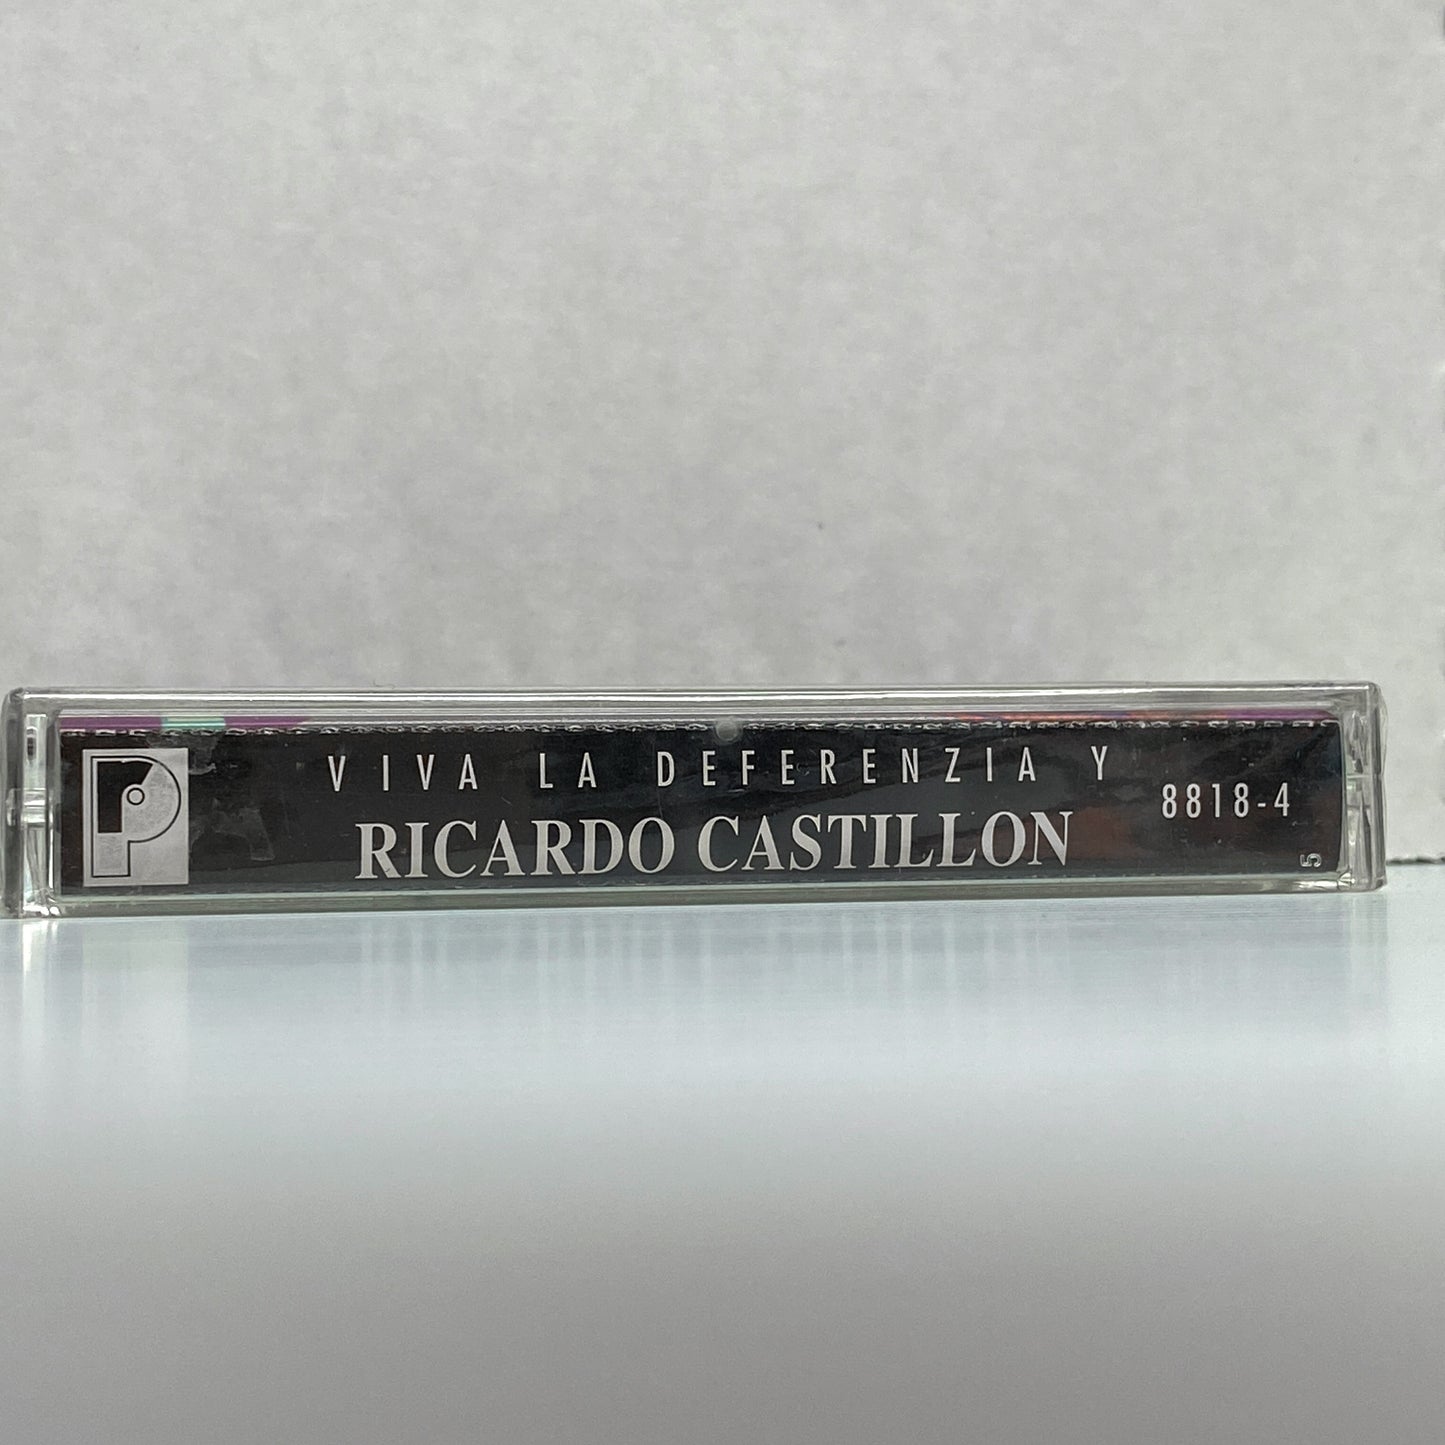 La Diferenzia Y Ricardo Castillon - Viva La Diferenzia (Cassette)